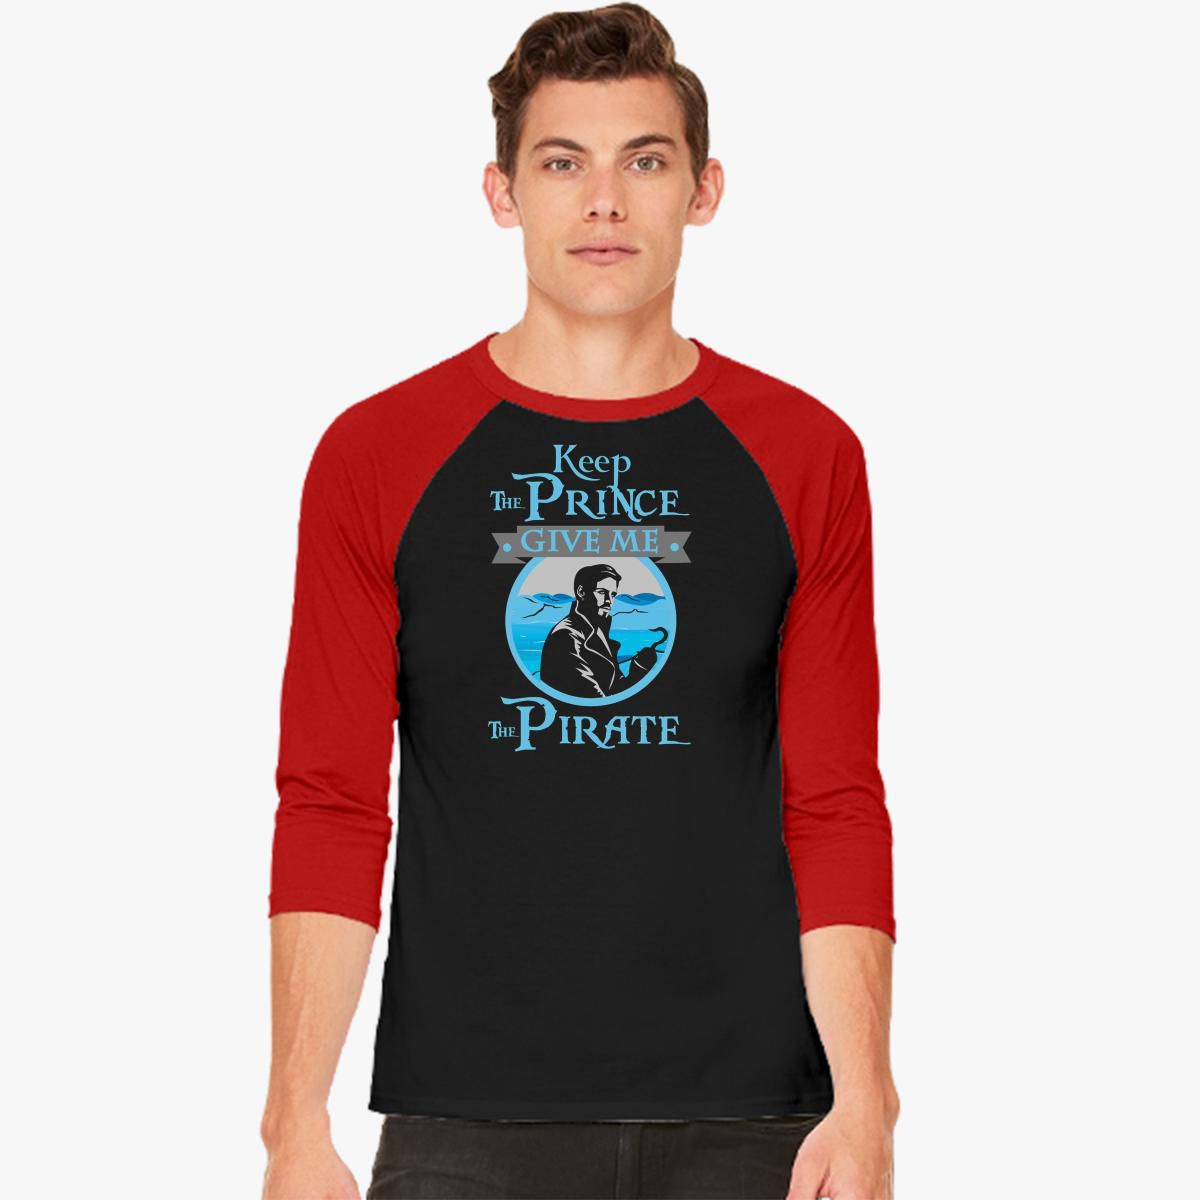 Captain Pirate Tee shirt design